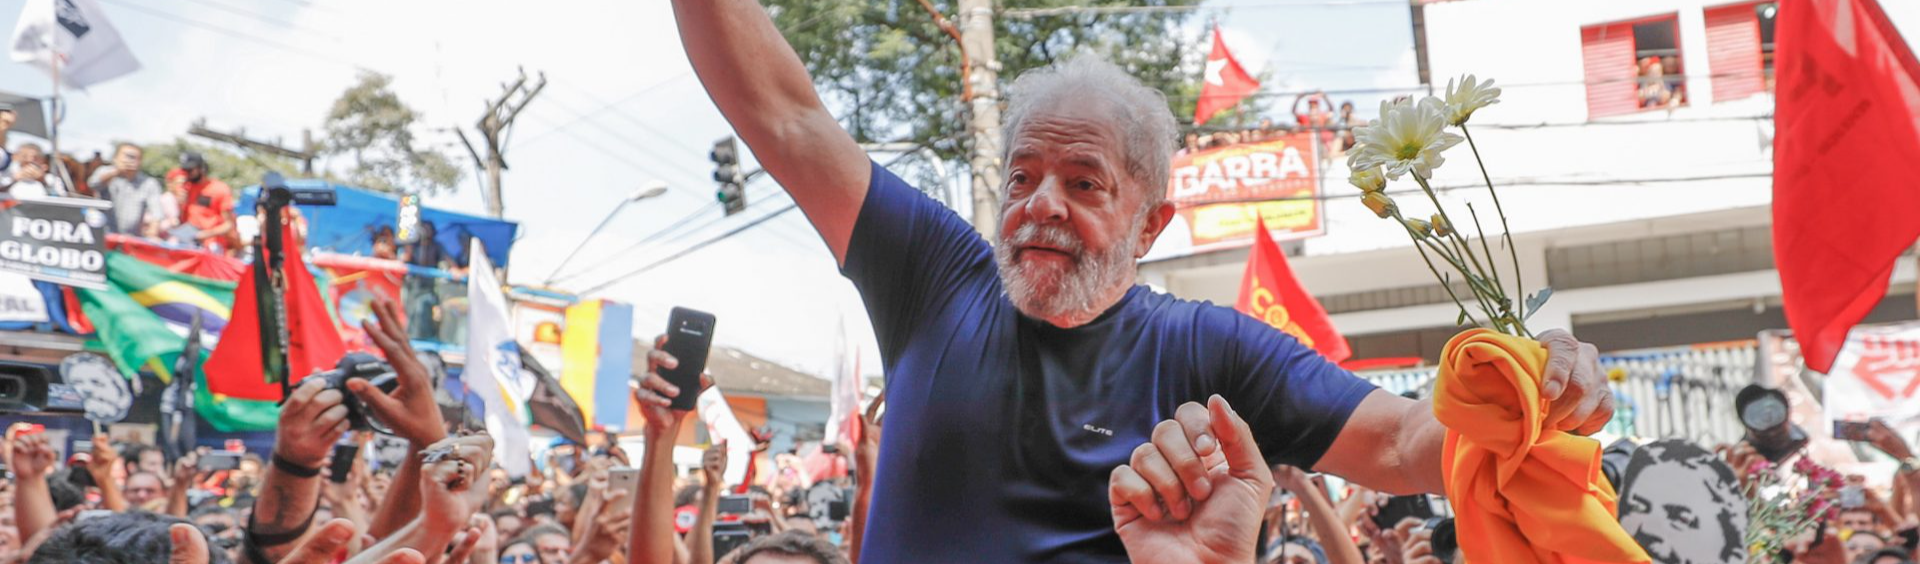 Fachin anula processos da Lava Jato contra Lula e ex-presidente recupera direitos políticos